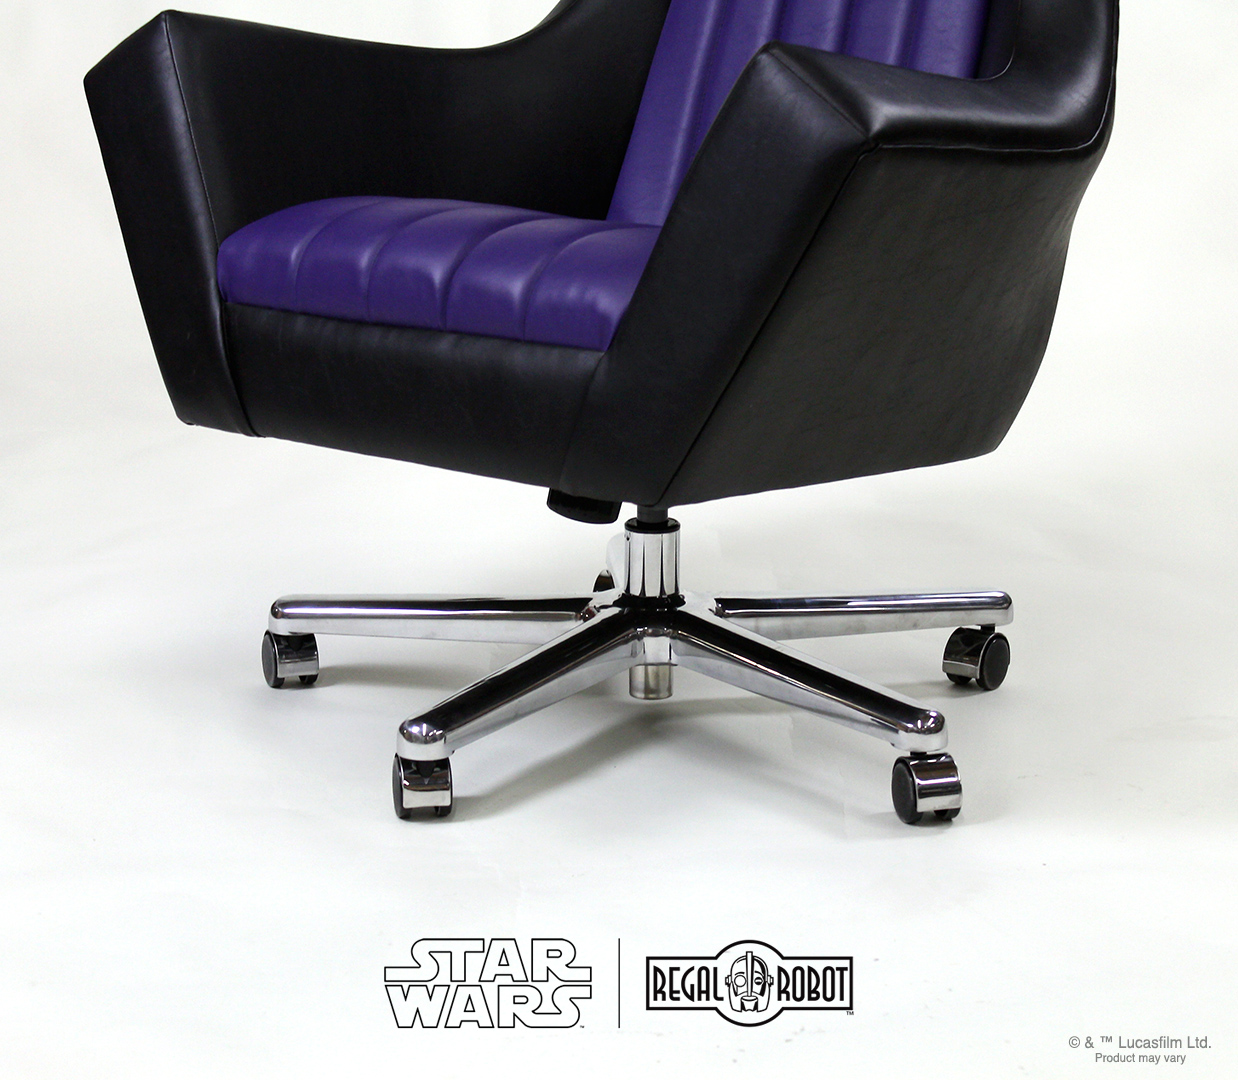 Emperor Throne Executive Desk Chair – Regal Robot